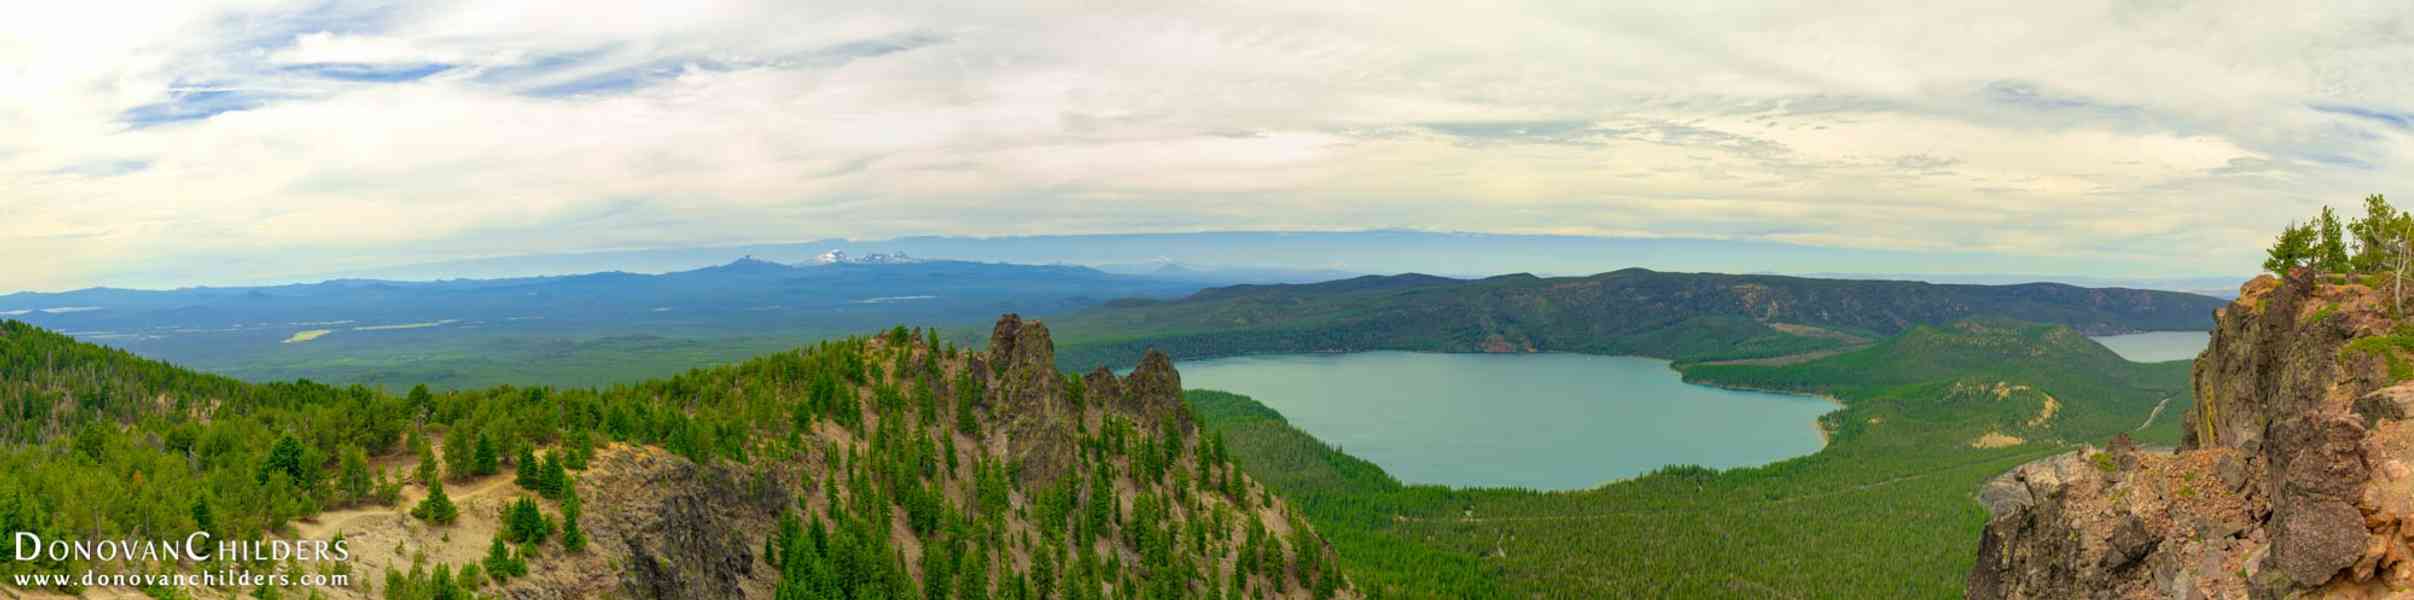 Paulina Peak near Paulina Lake, Oregon - Looking North